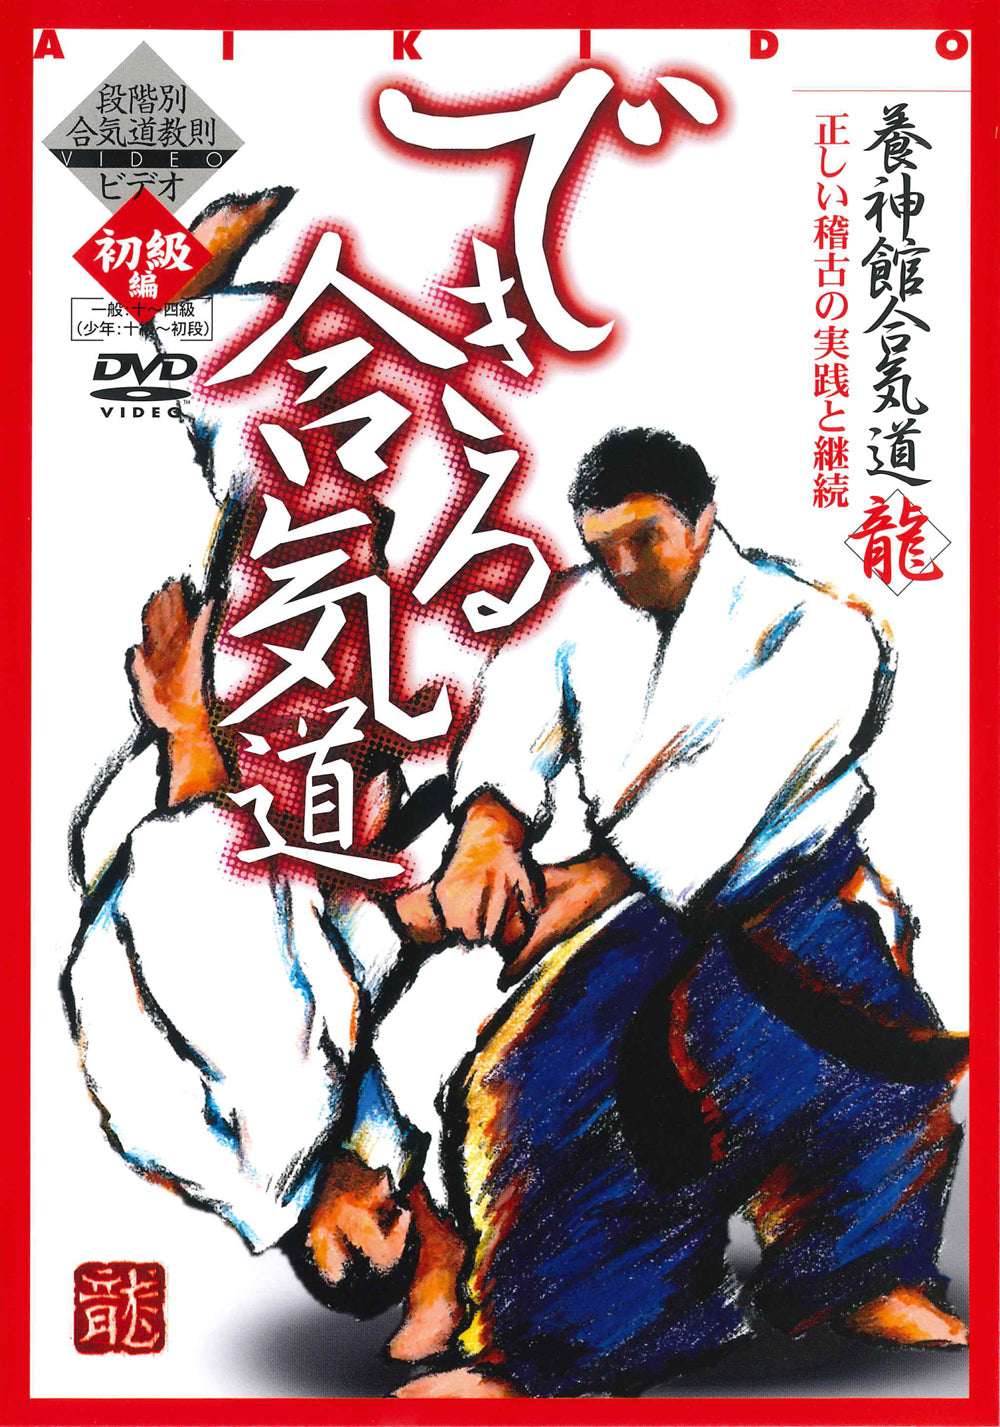 DVD de Aikido de nivel avanzado de Tsuneo Ando